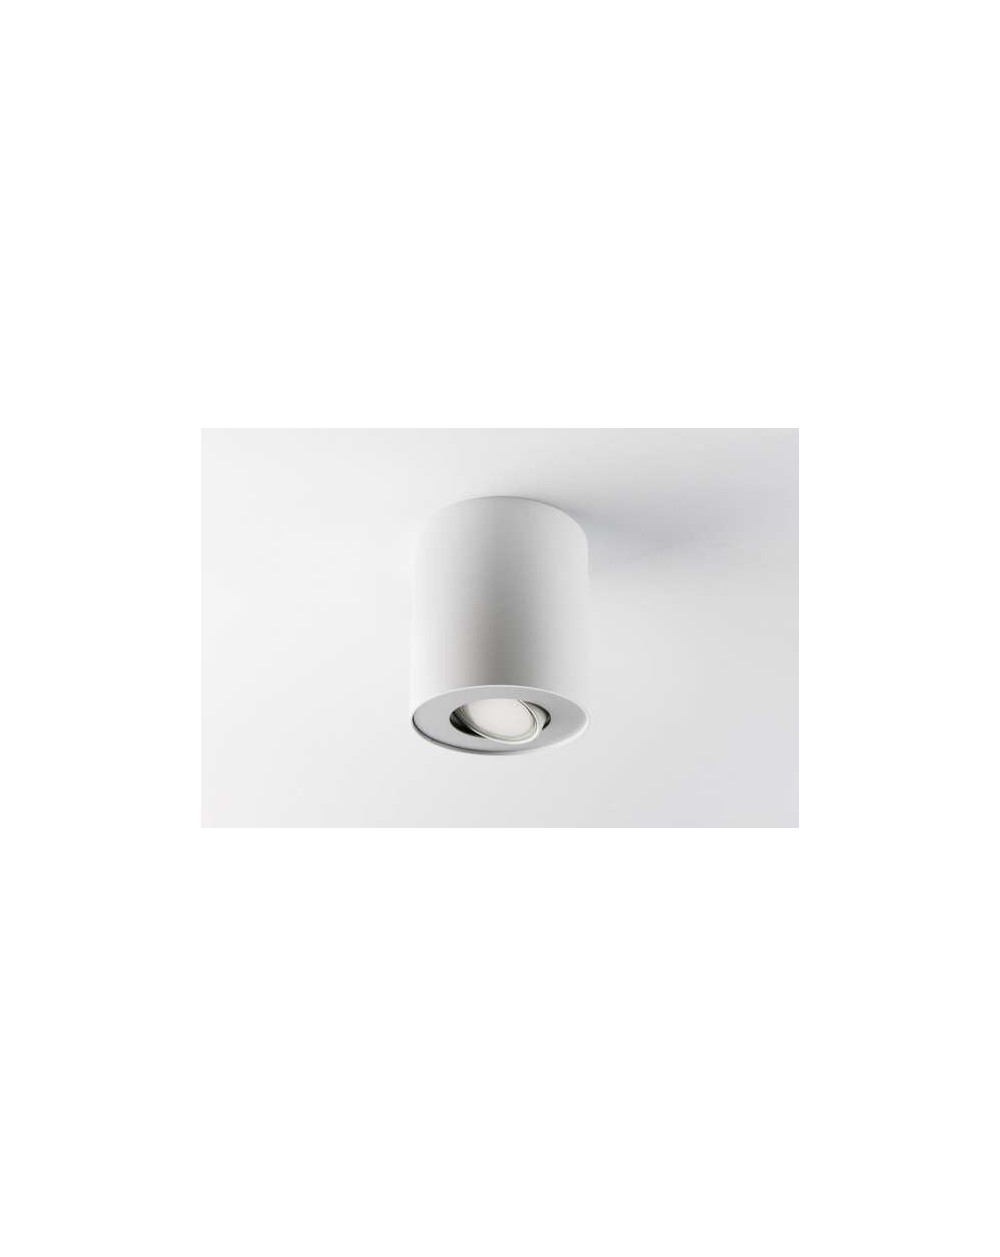 Natynkowa lampa sufitowa MyTube NT GU10 - Mistic oprawa okrągła biały mat wysokość 120 mm z regulacją źródła światła